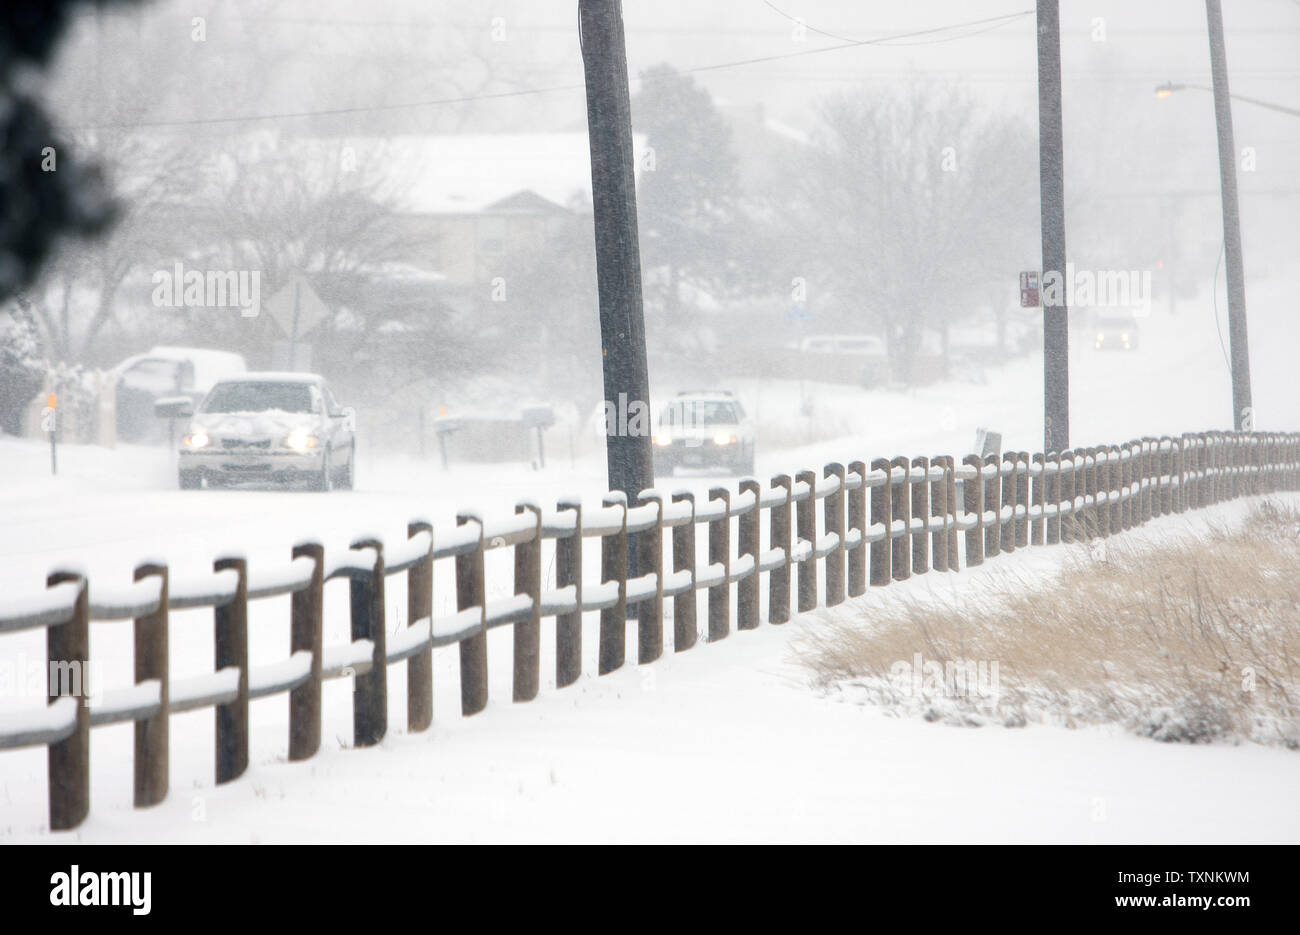 La mattina presto i conducenti a trovare le strade coperte di neve e ghiaccio durante una tempesta di neve a Denver il 24 febbraio 2013. Forecasters indicano la tempesta lascerà quasi un piede di neve. UPI/Gary Caskey C. Foto Stock